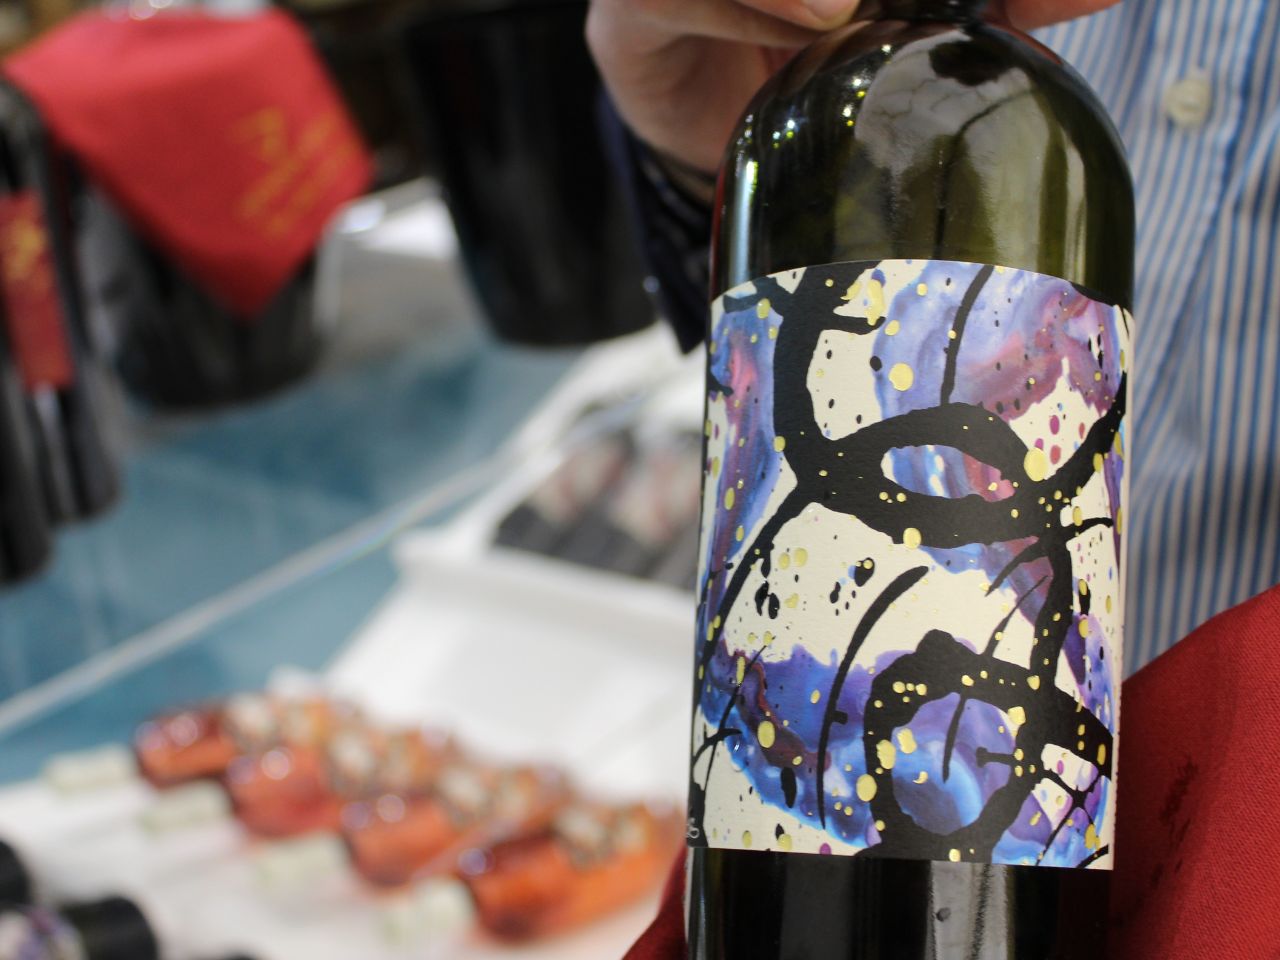 Come cambia la percezione delle etichette del vino con l’età? Un questionario dall’Università di Urbino